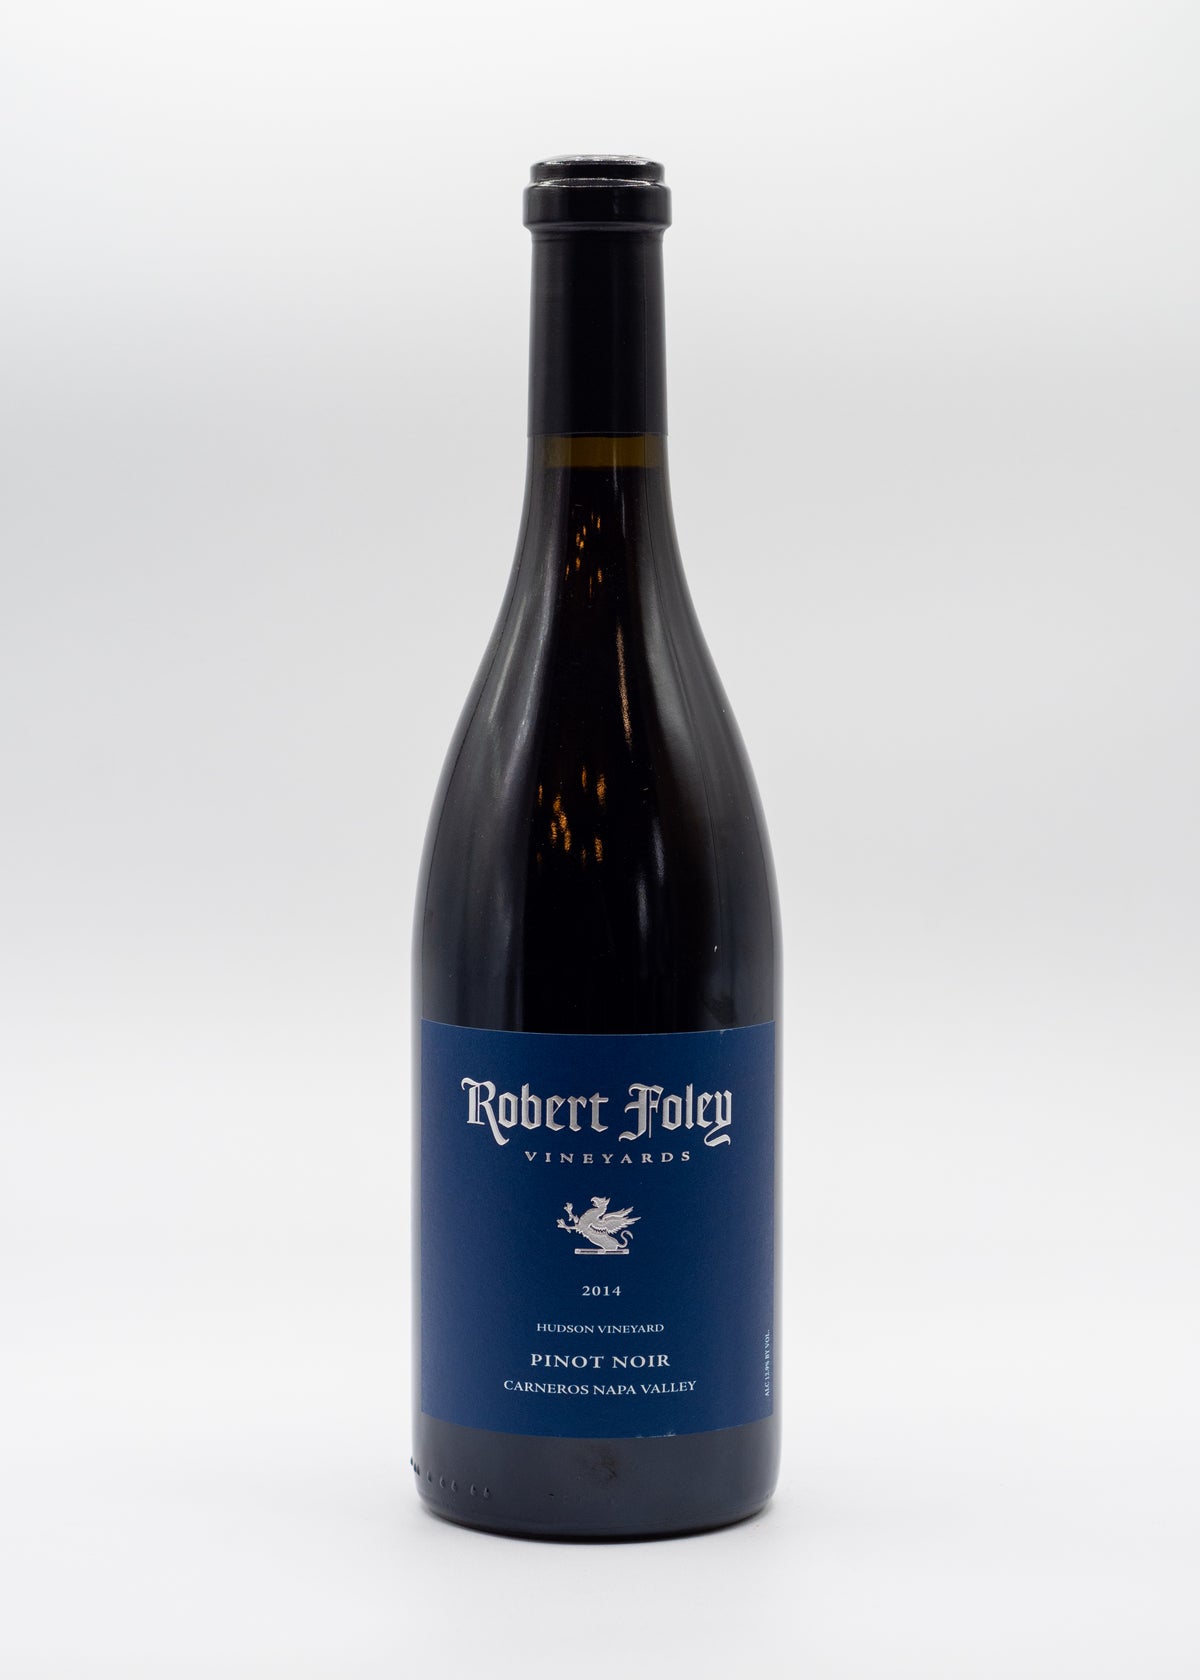 Robert Foley Pinot Noir Hudson Vineyard 2014